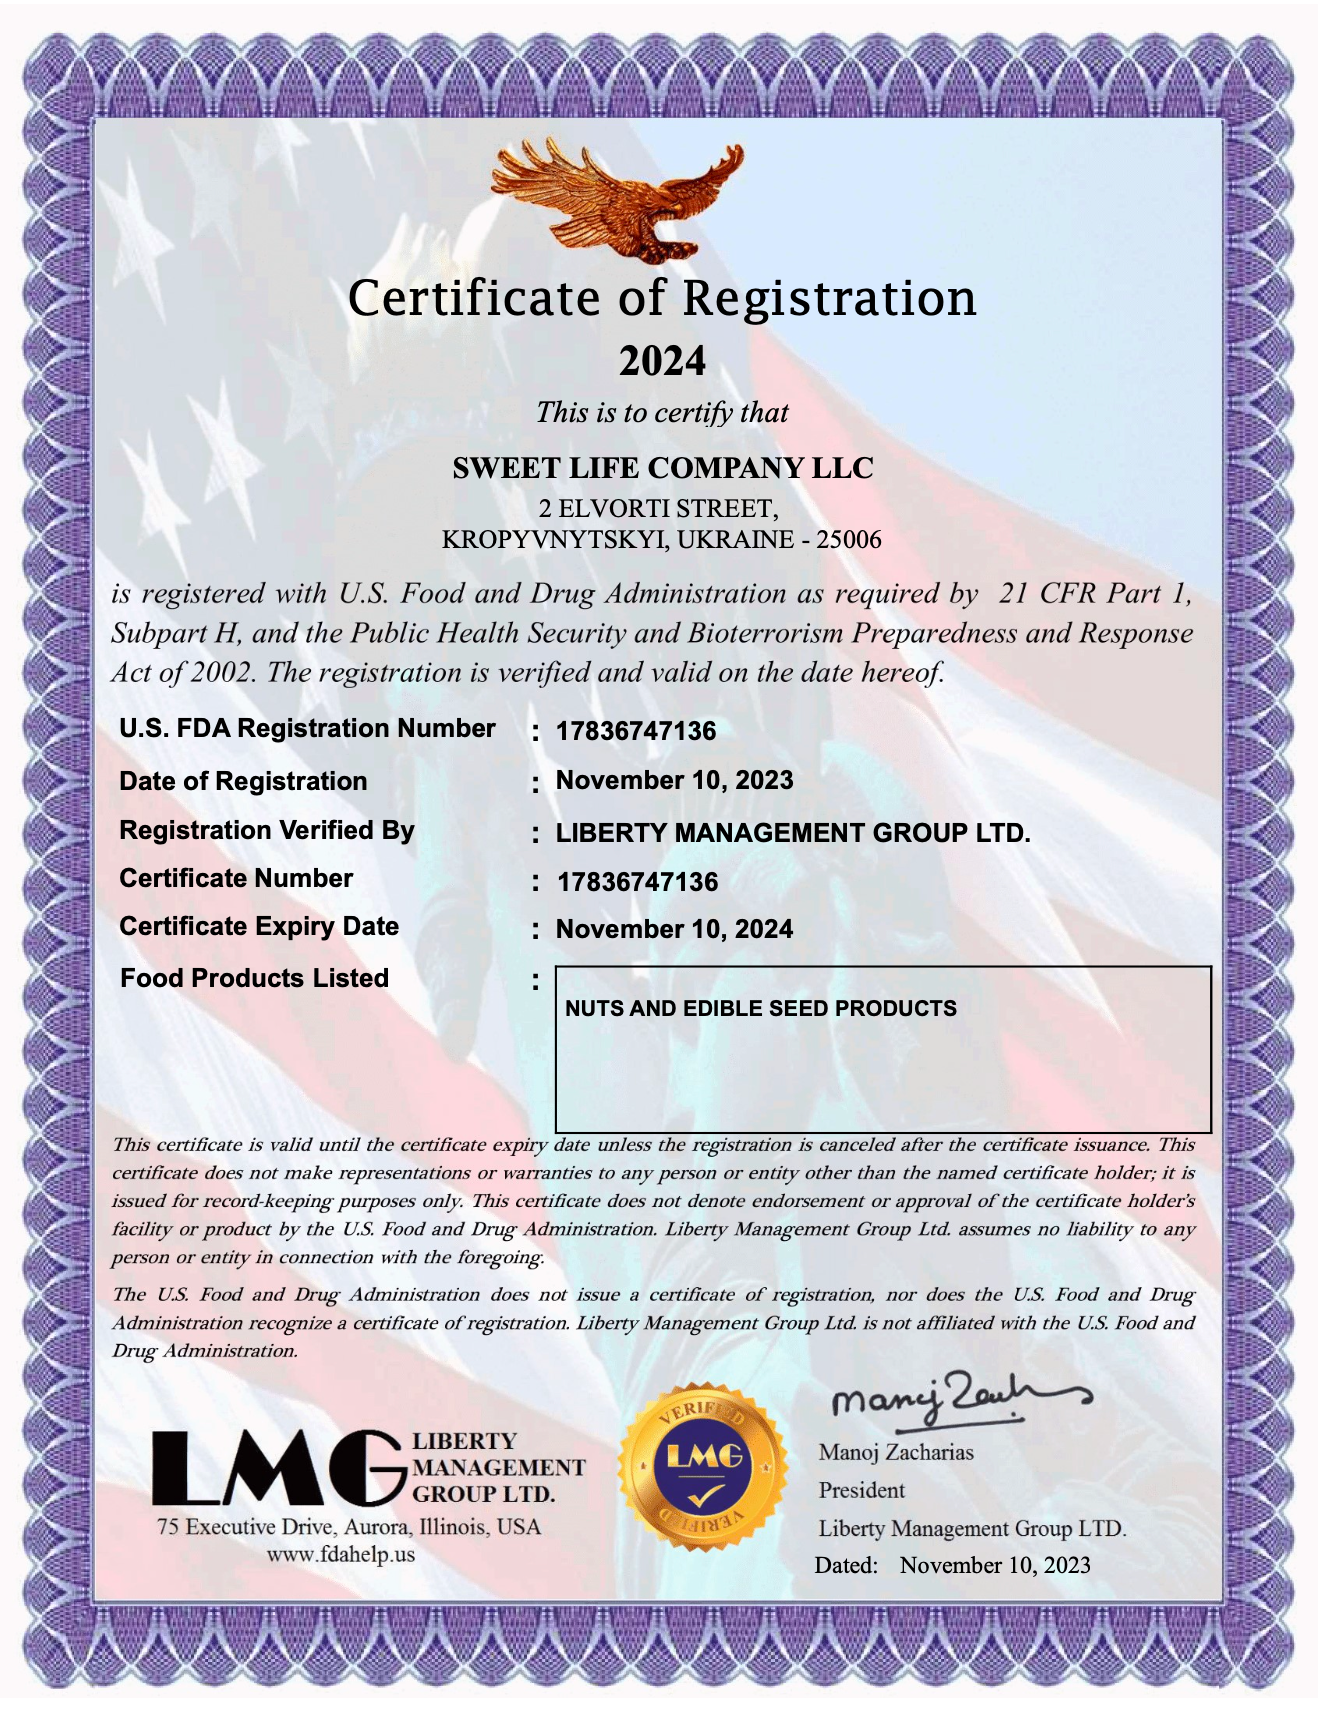 UA Sweets FDA Certificate.png__PID:f4448f95-eedc-4432-a385-ee74ec2f01e1